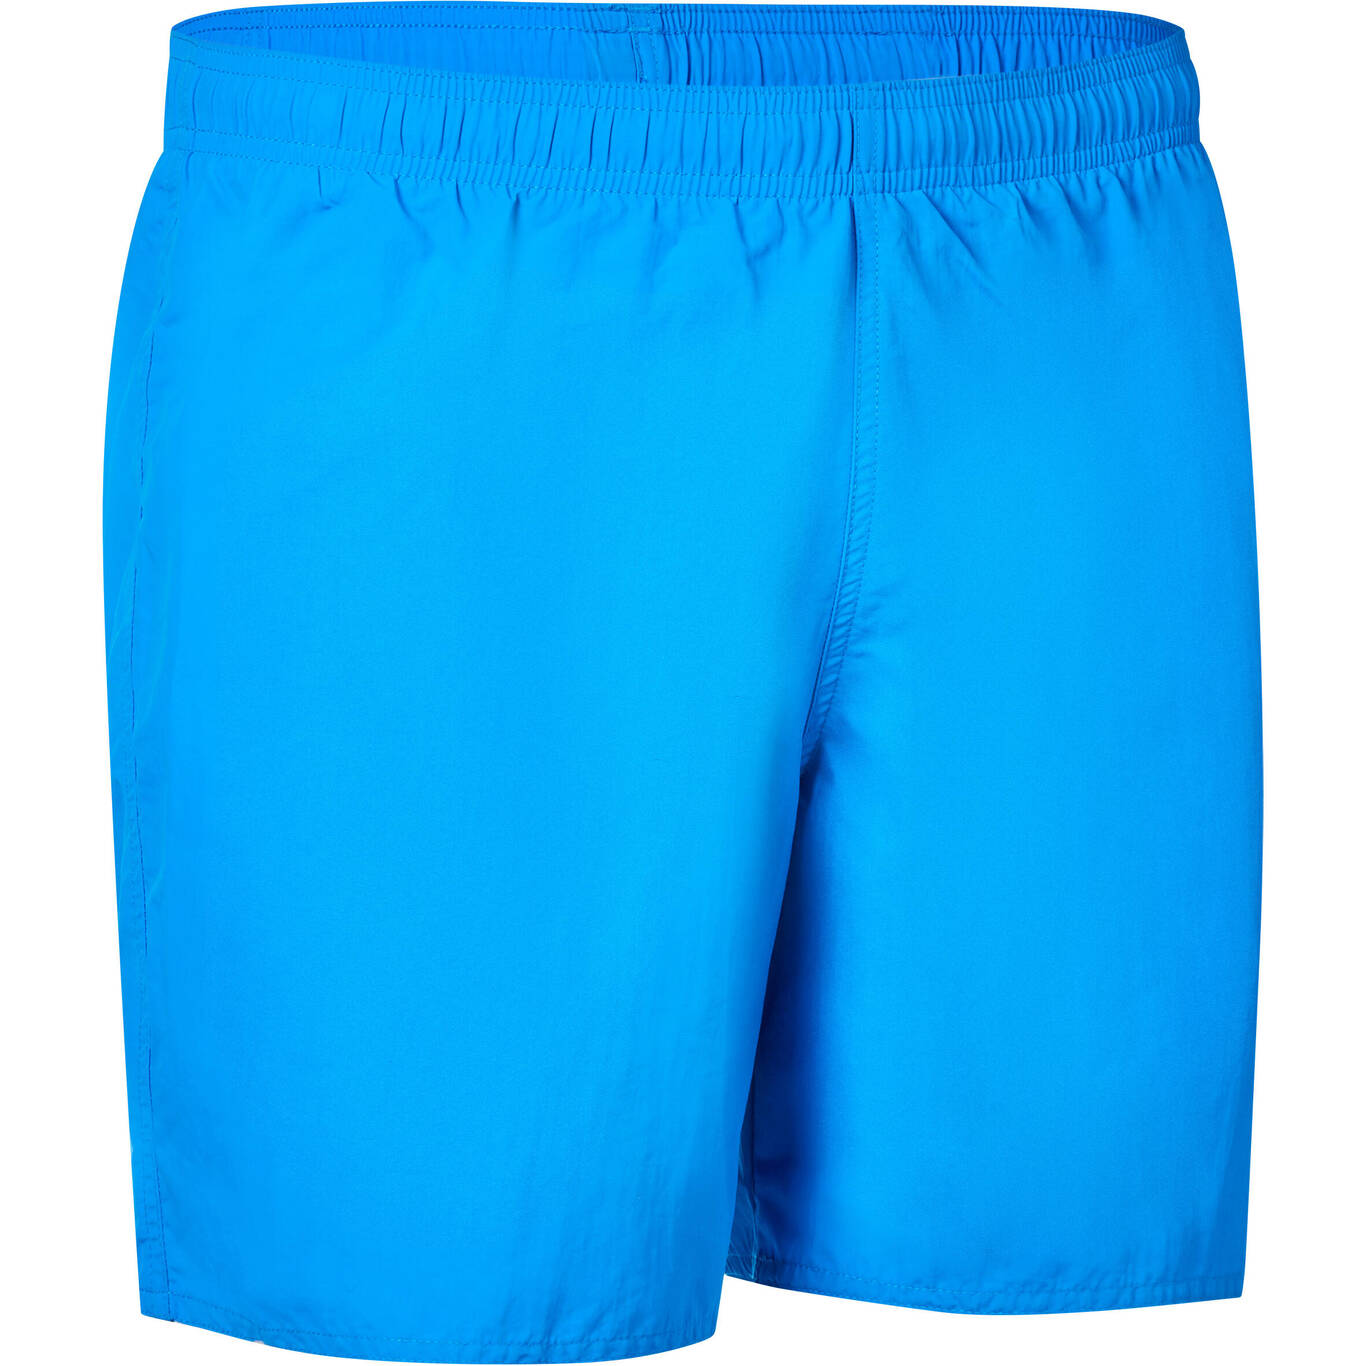 Celana Renang Pendek Pria Basic 100 - Biru